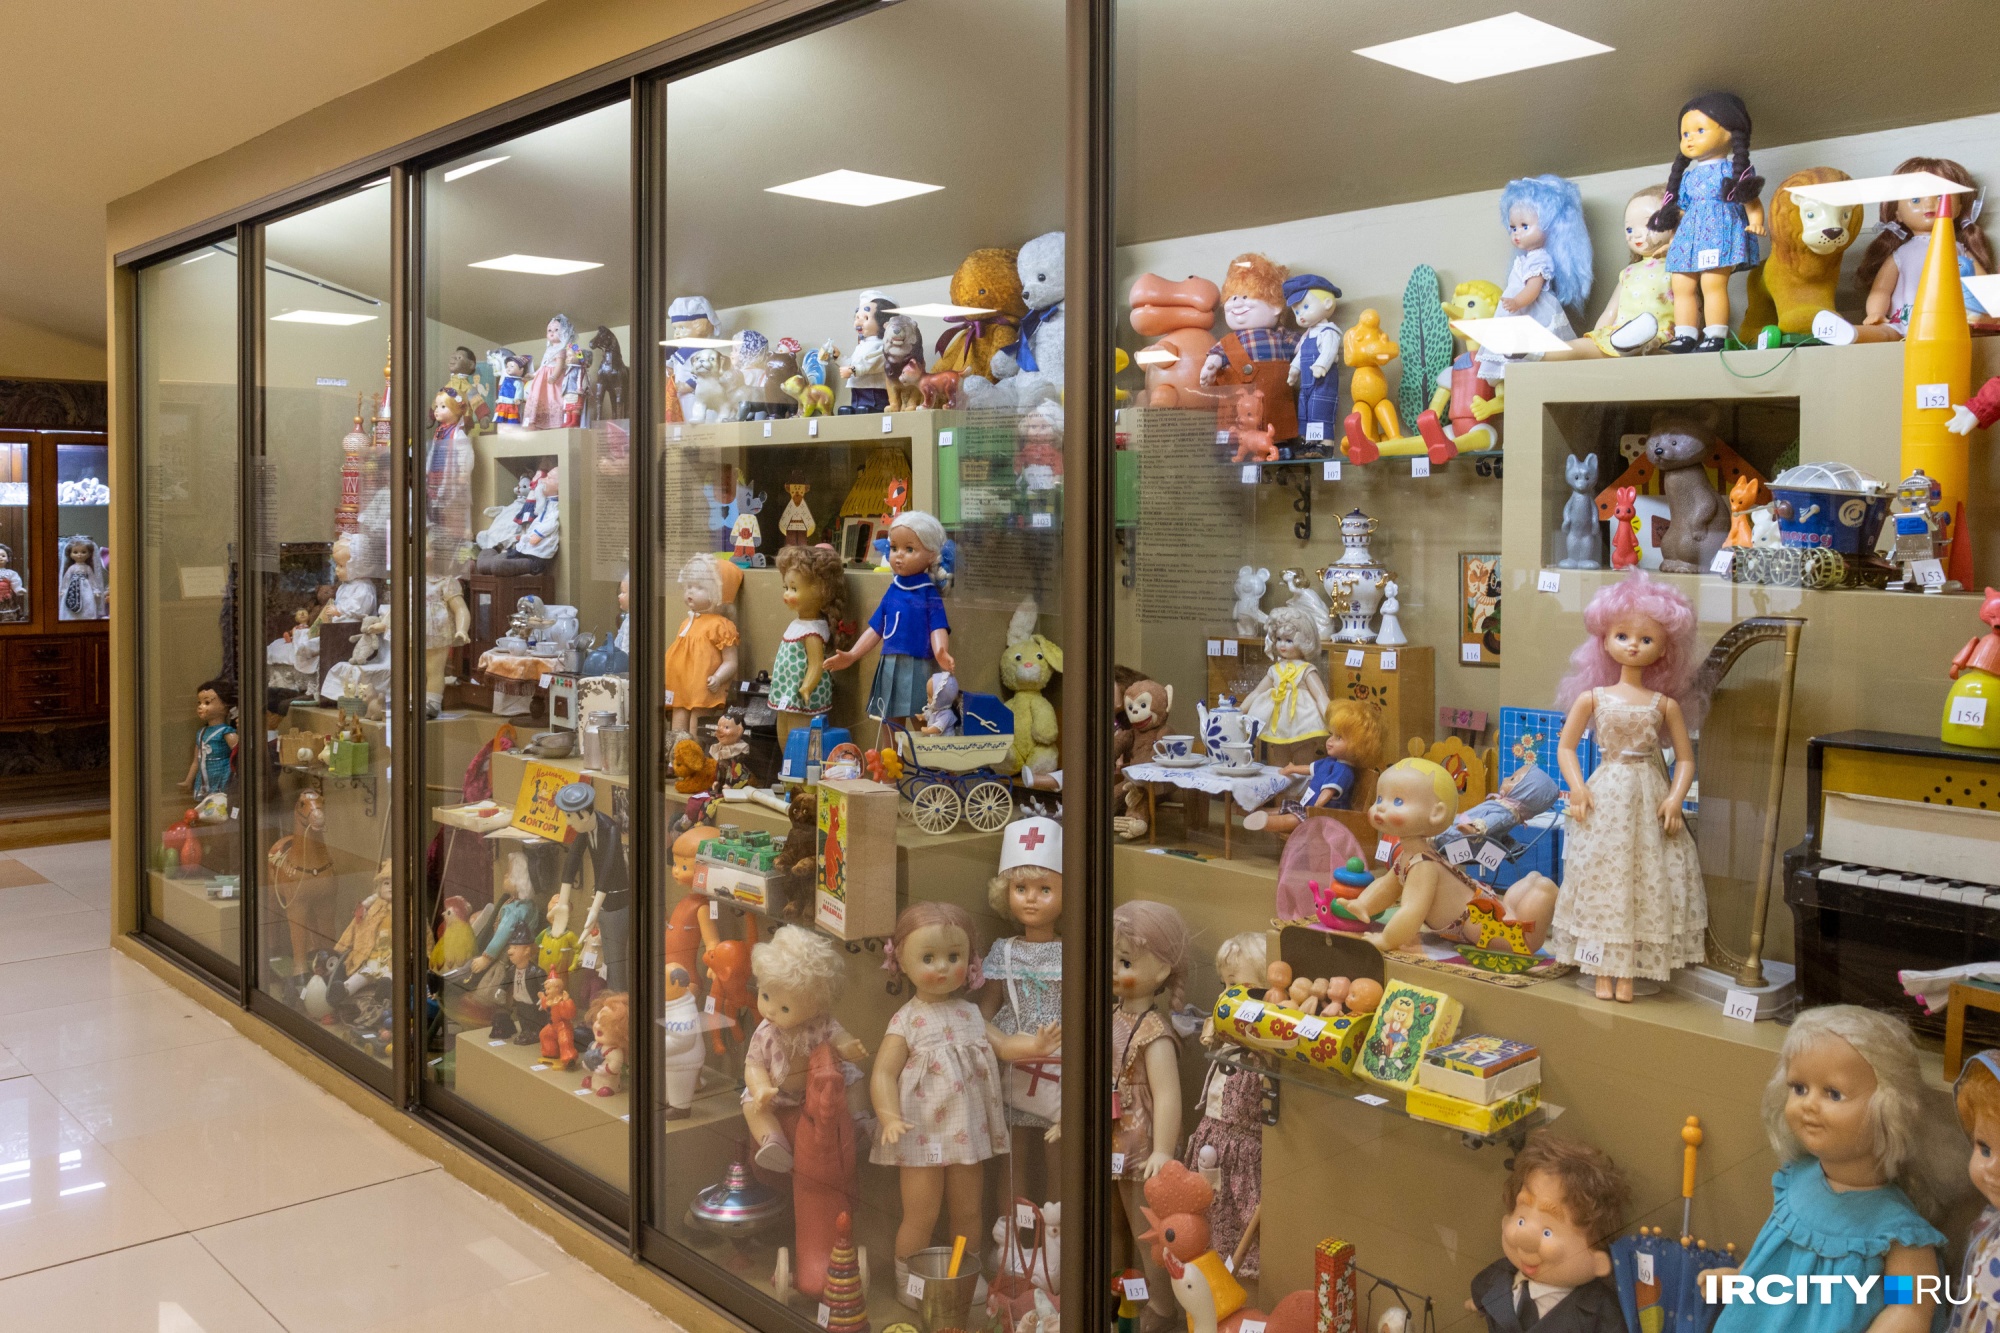 Куклы в экспозиции музея расположены в хронологическом порядке